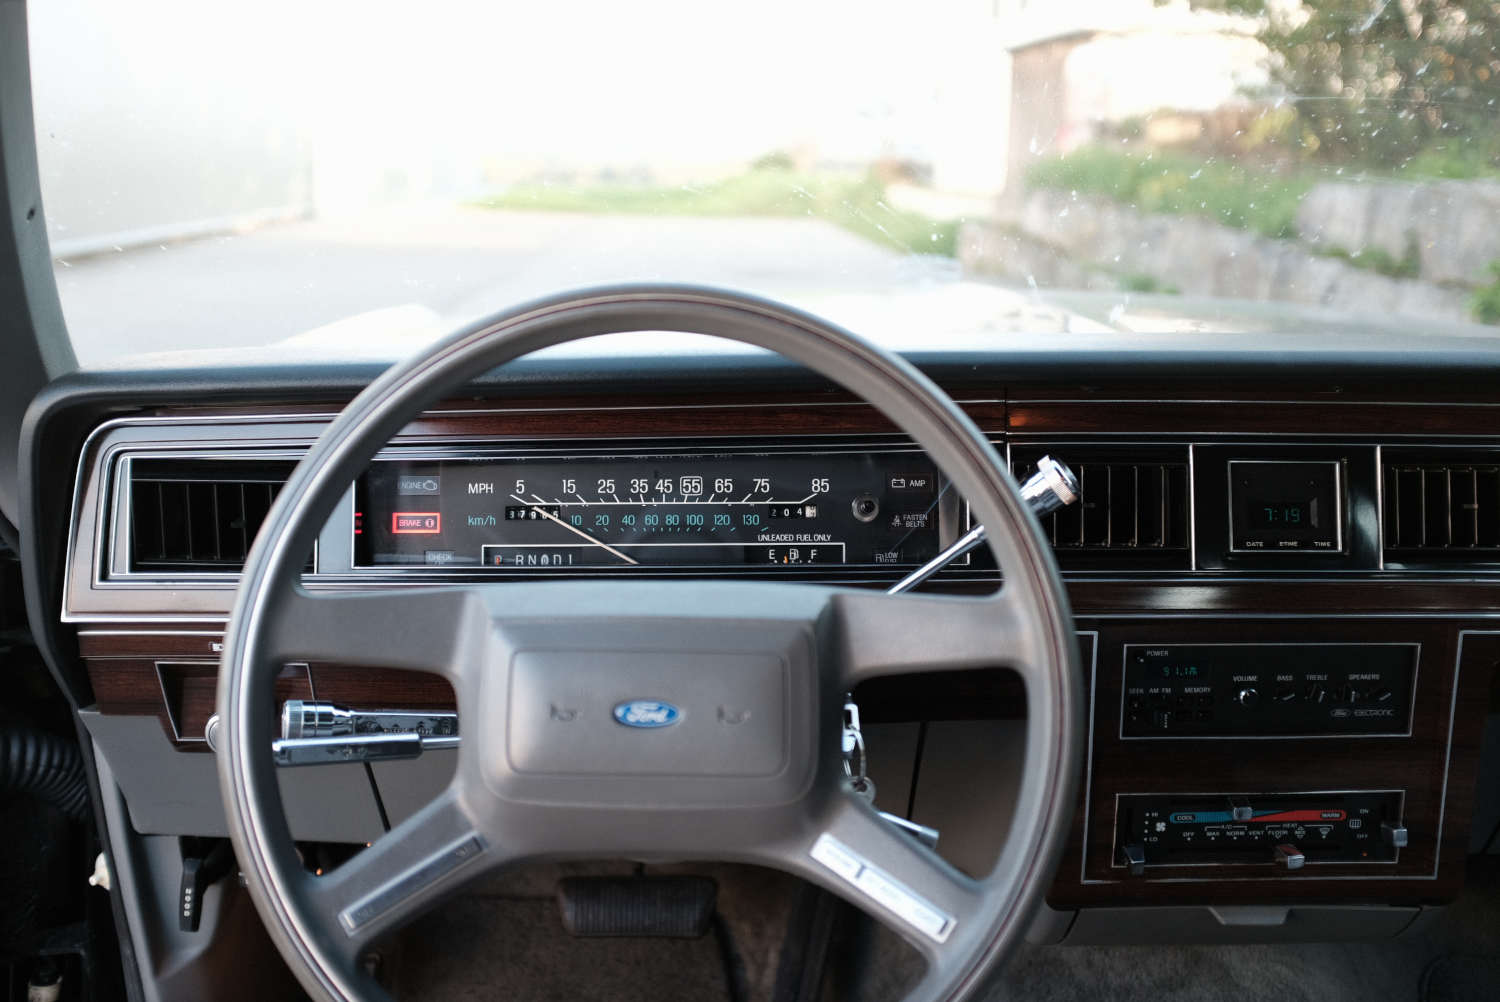 Ford LTD Crown Victoria 1987 Interior